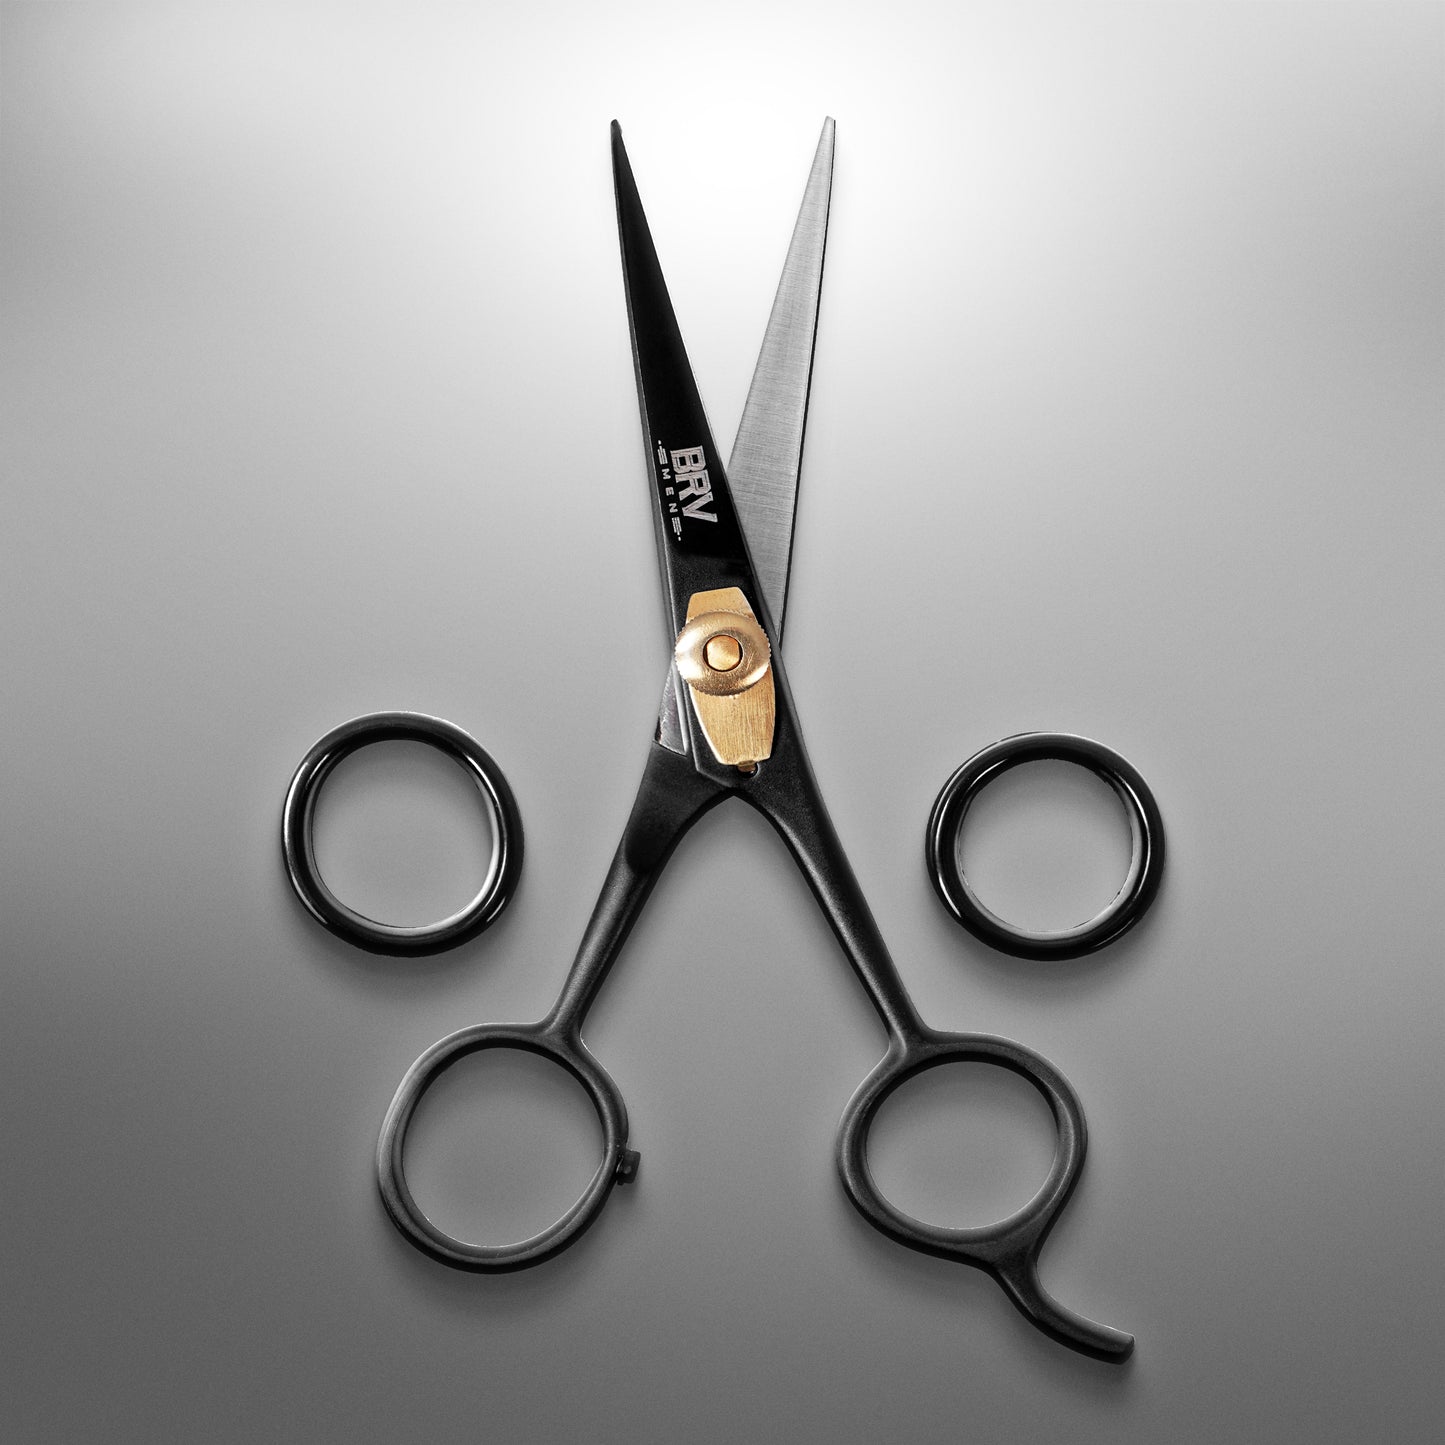 
                  
                    BRV MEN High Carbon Stainless Steel Beard Mustache Scissors - 5" - Hammer Forged 100% Stainless Steel - Razor Sharp Facial Hair Trimming Shears - Black
                  
                